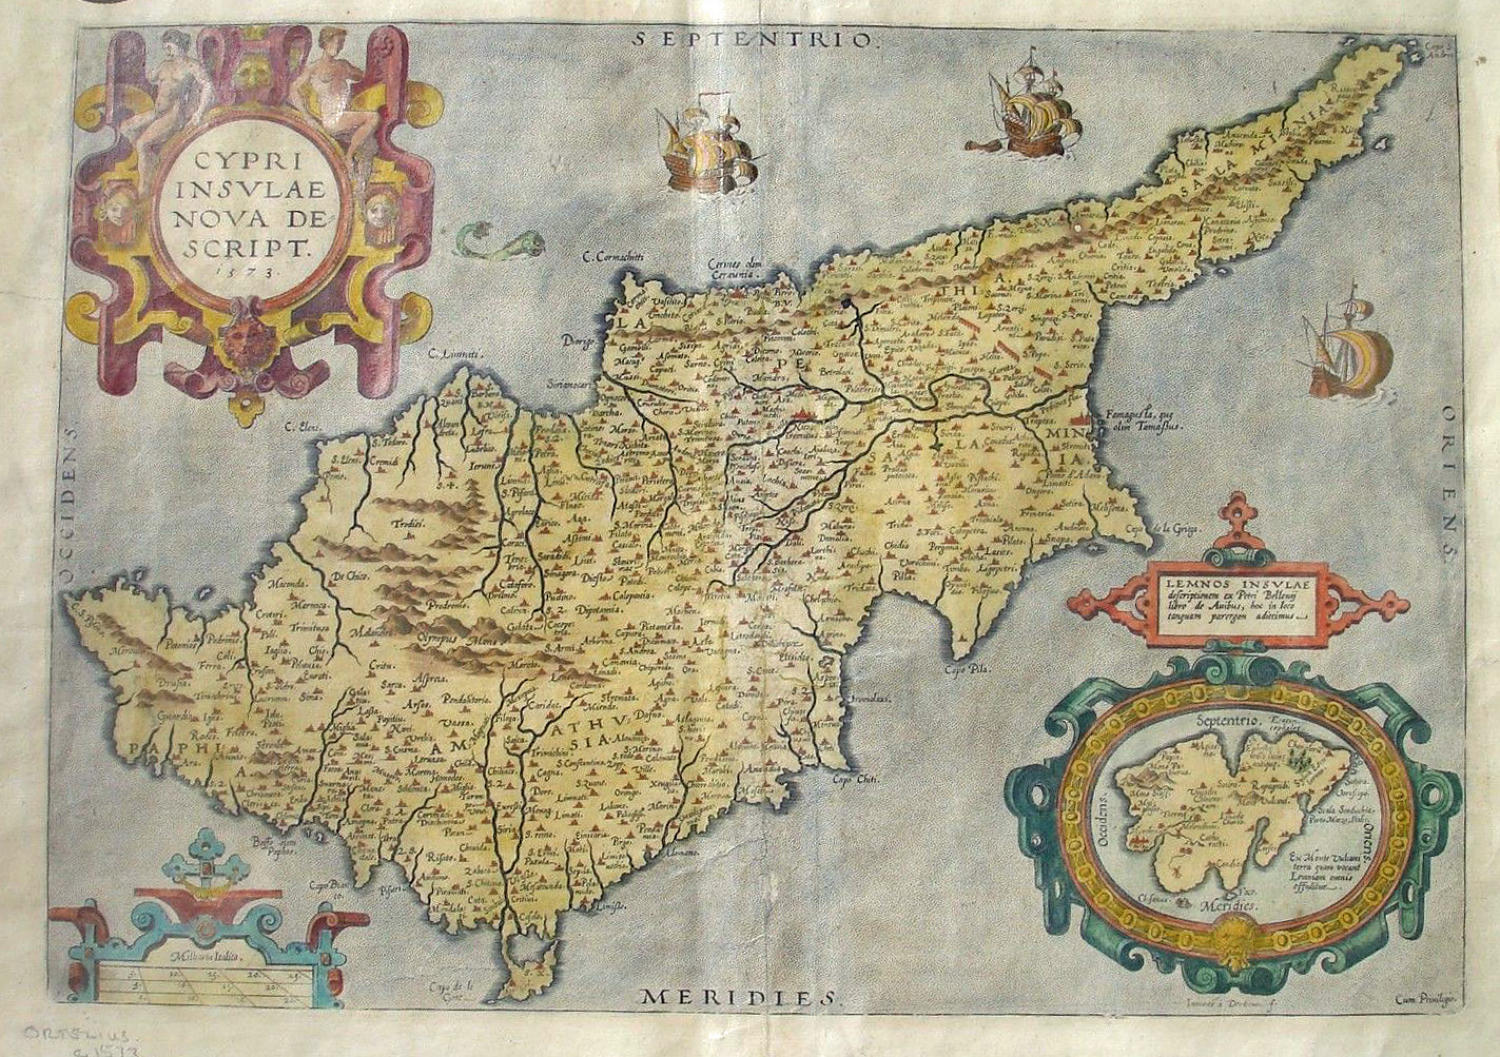 Ortelius - Cypri insulae nova descript